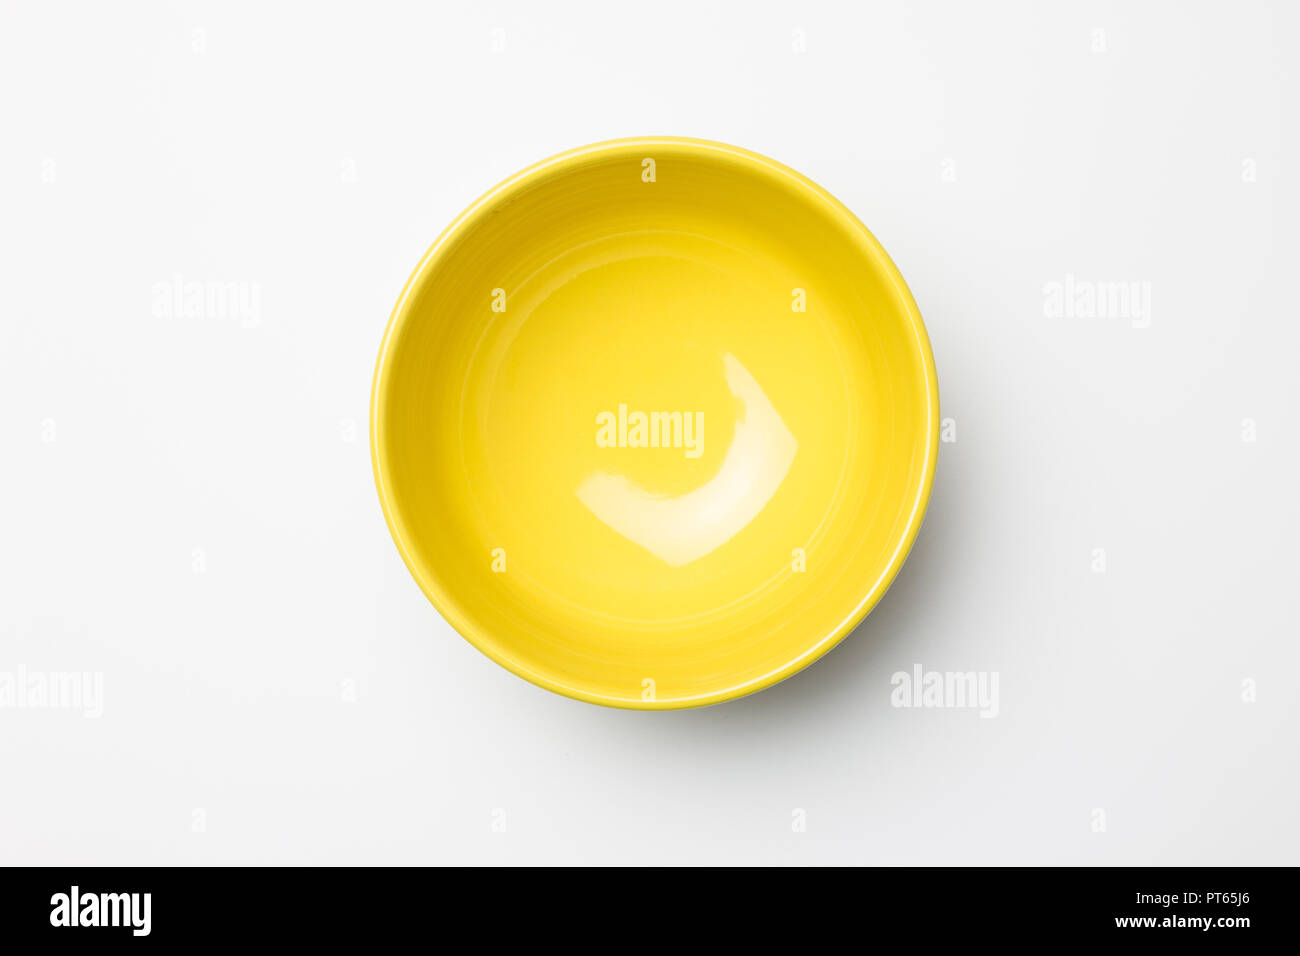 Yellow bowl on white background Stock Photo